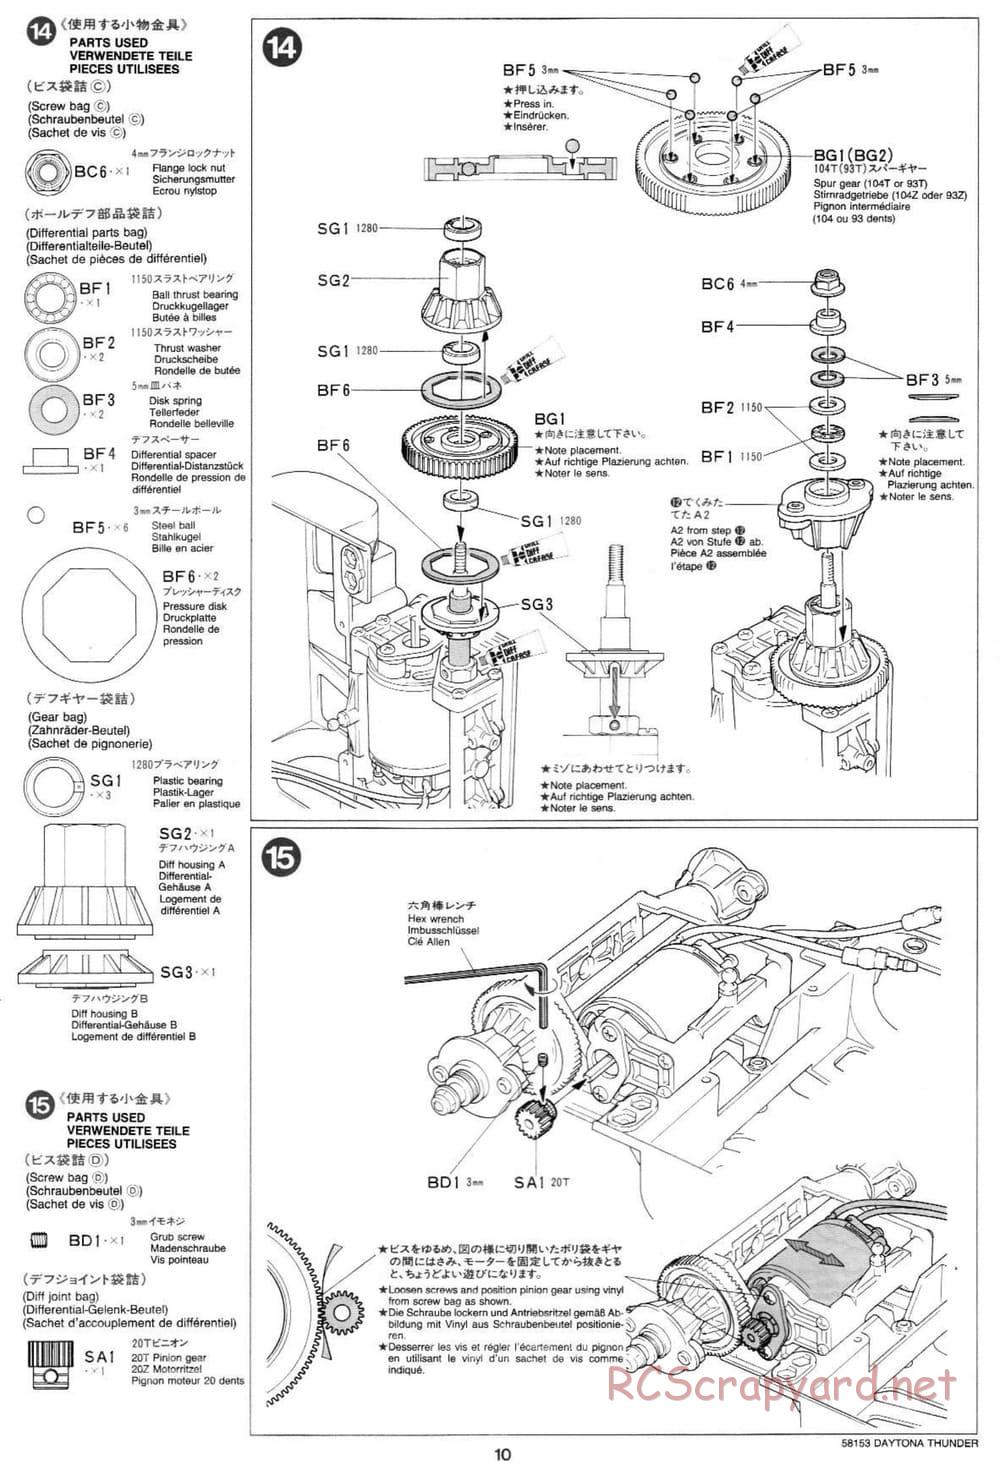 Tamiya - Daytona Thunder - Group-C Chassis - Manual - Page 10